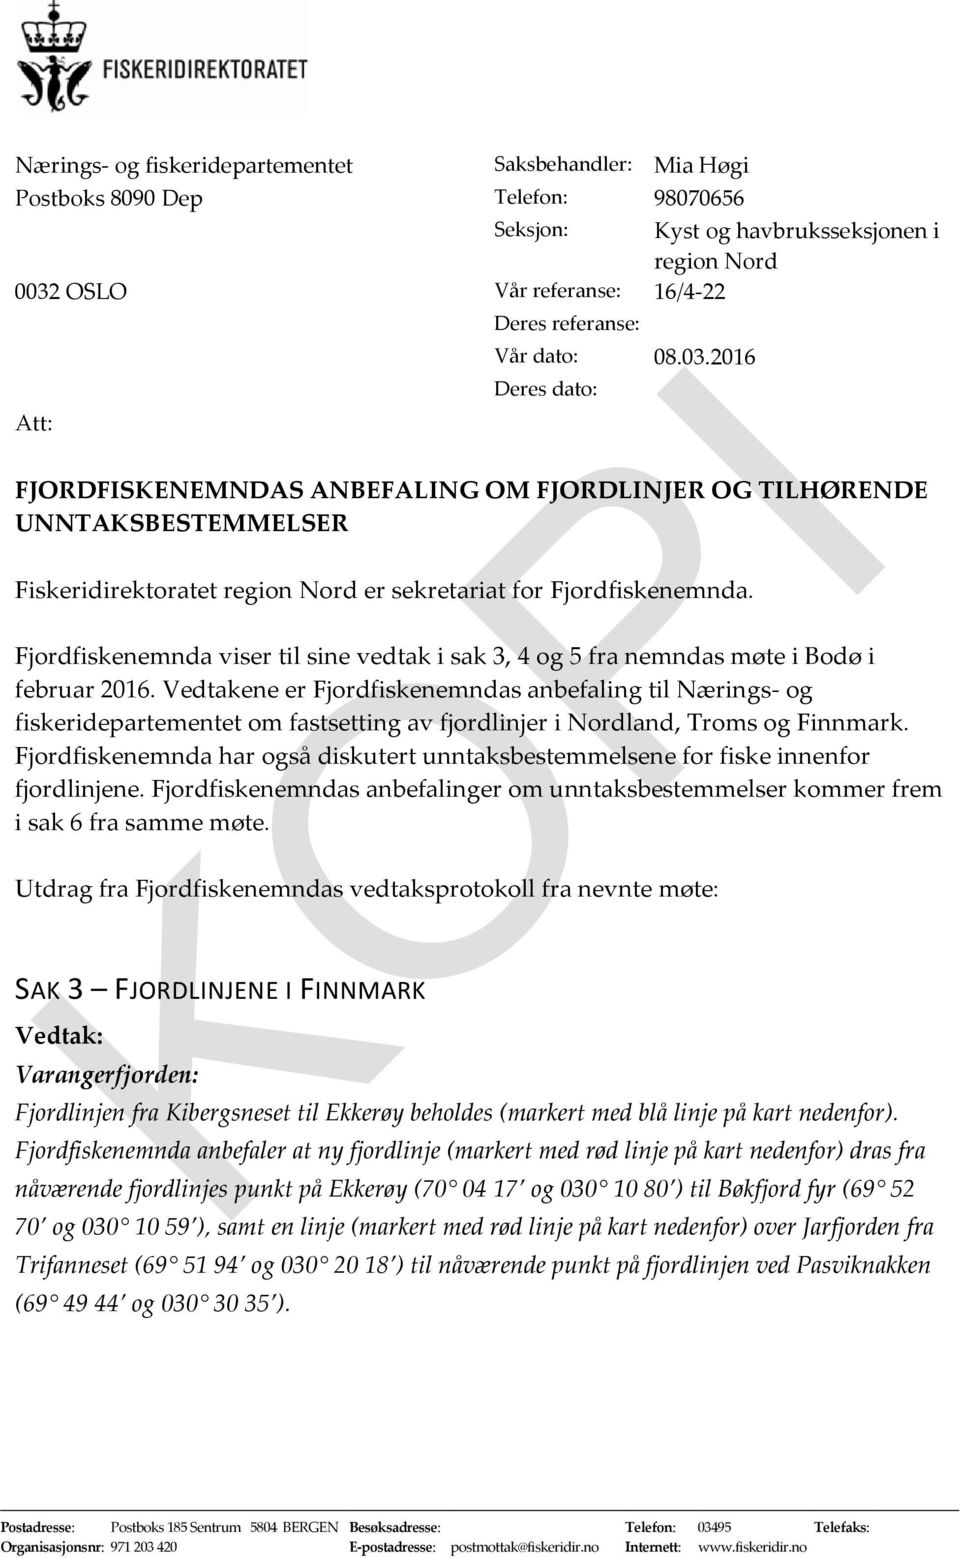 Fjordfiskenemnda viser til sine vedtak i sak 3, 4 og 5 fra nemndas møte i Bodø i februar 2016.